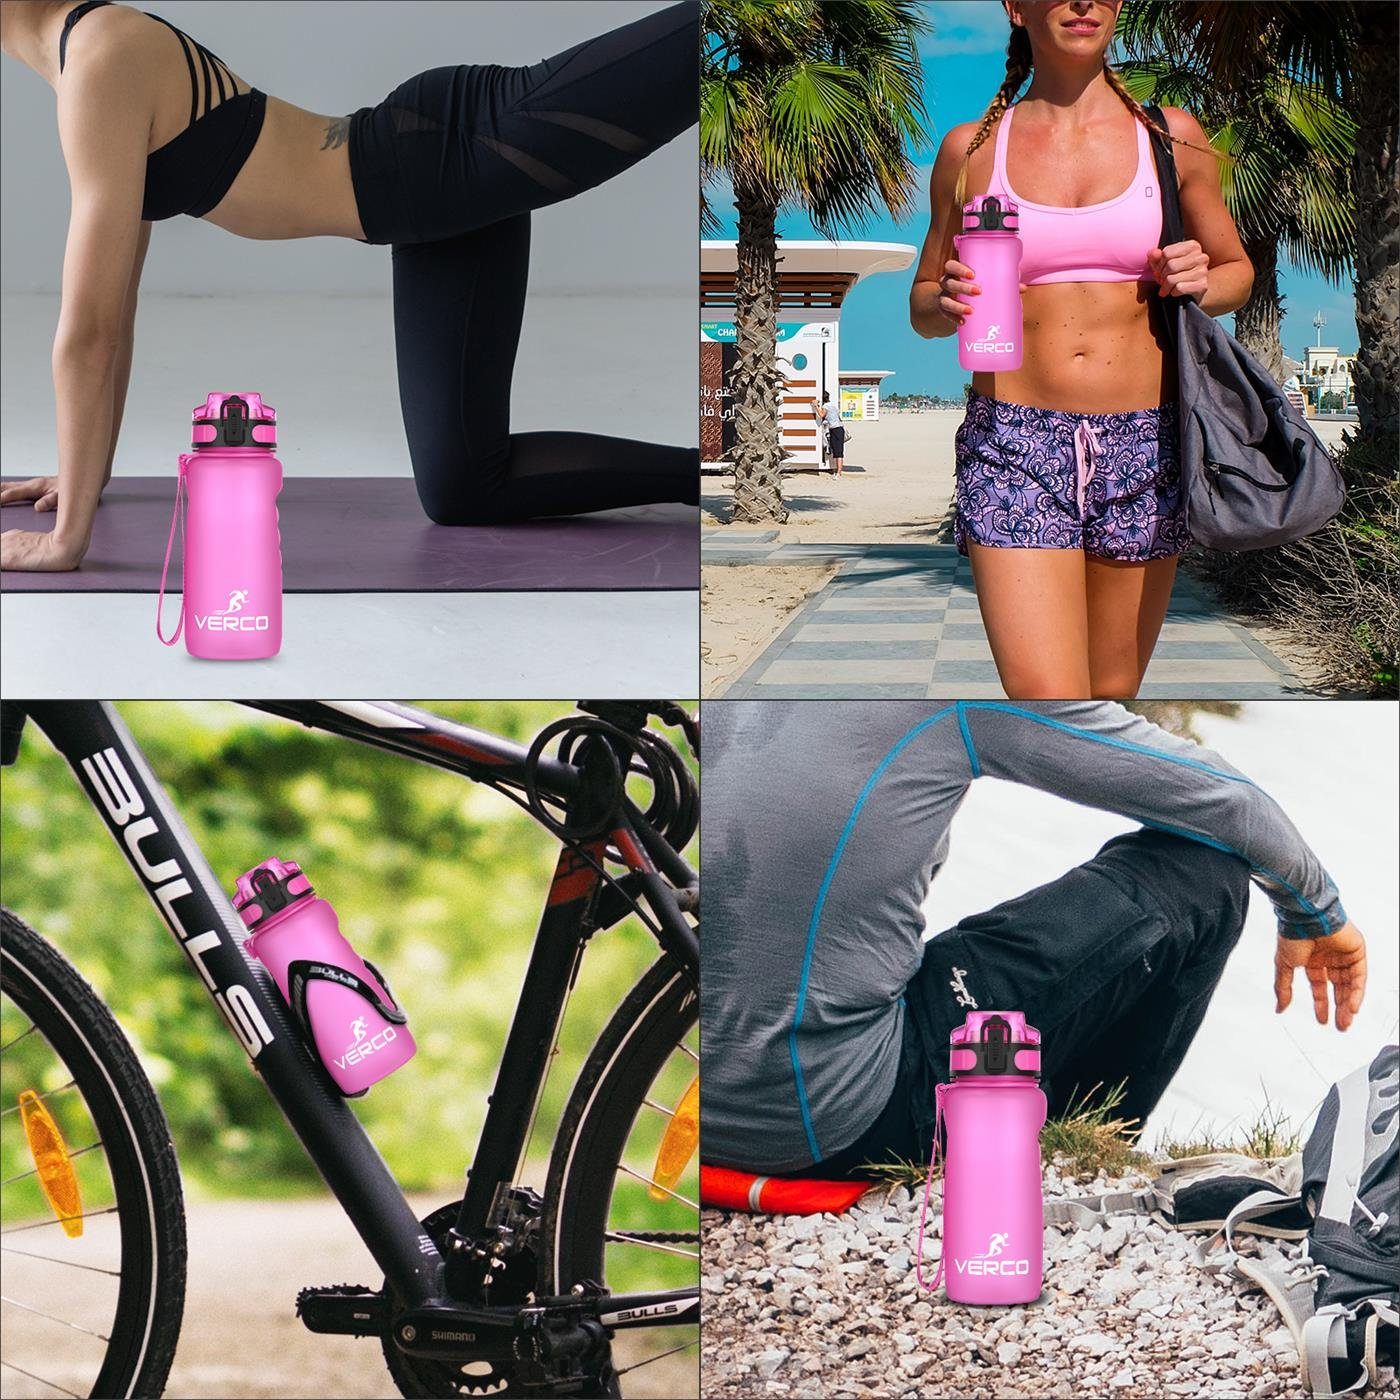 Sport ml Liter Tritan mit Pink nachhaltig 0,35 Wasserflasche Frei Trinkflasche Flasche, wiederverwendbar 350 VERCO BPA Fruchtsieb